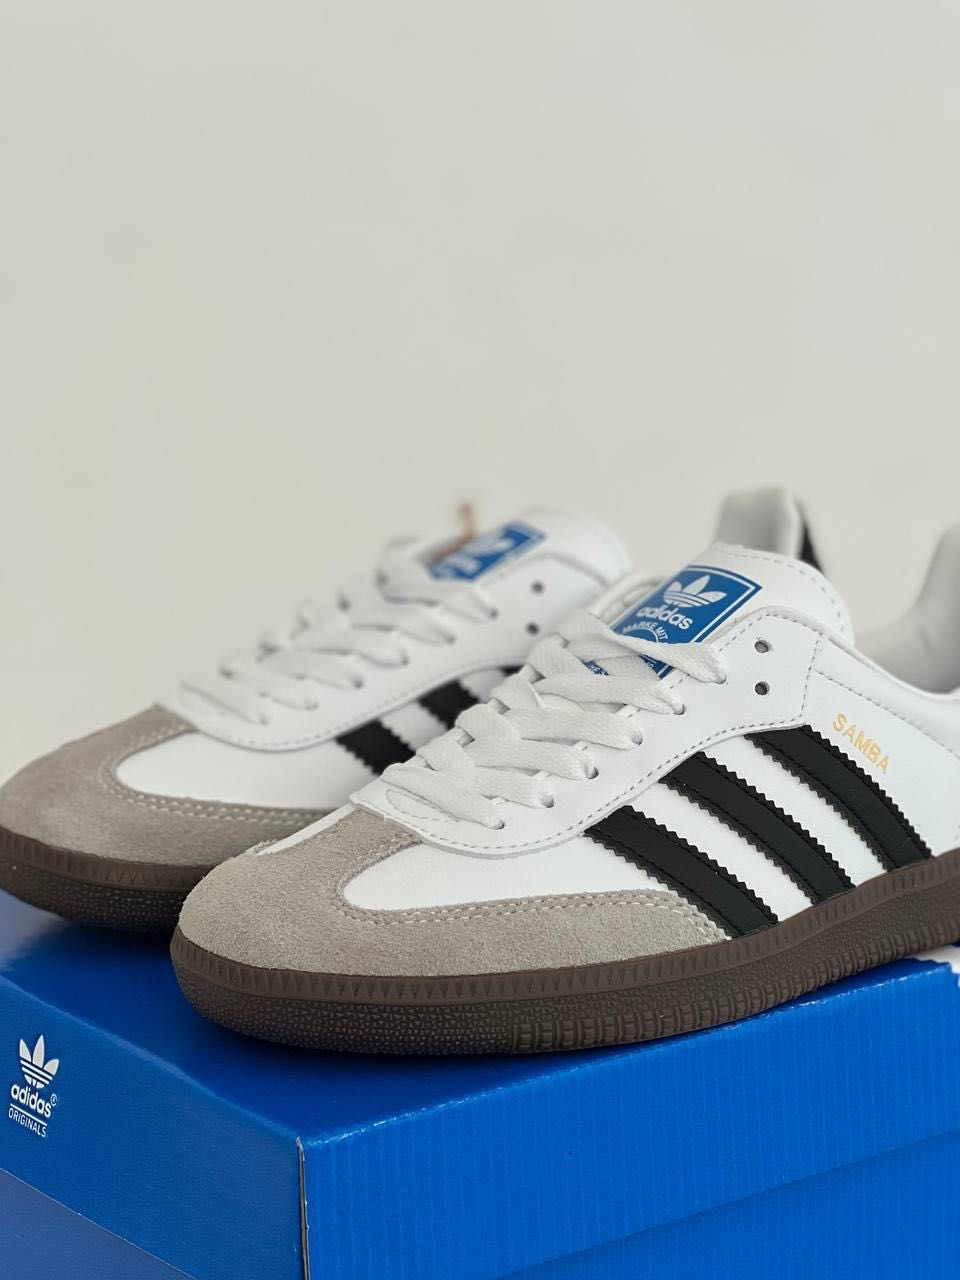 Женские кроссовки Adidas Samba OG 'White\Gum' Размеры 36-41